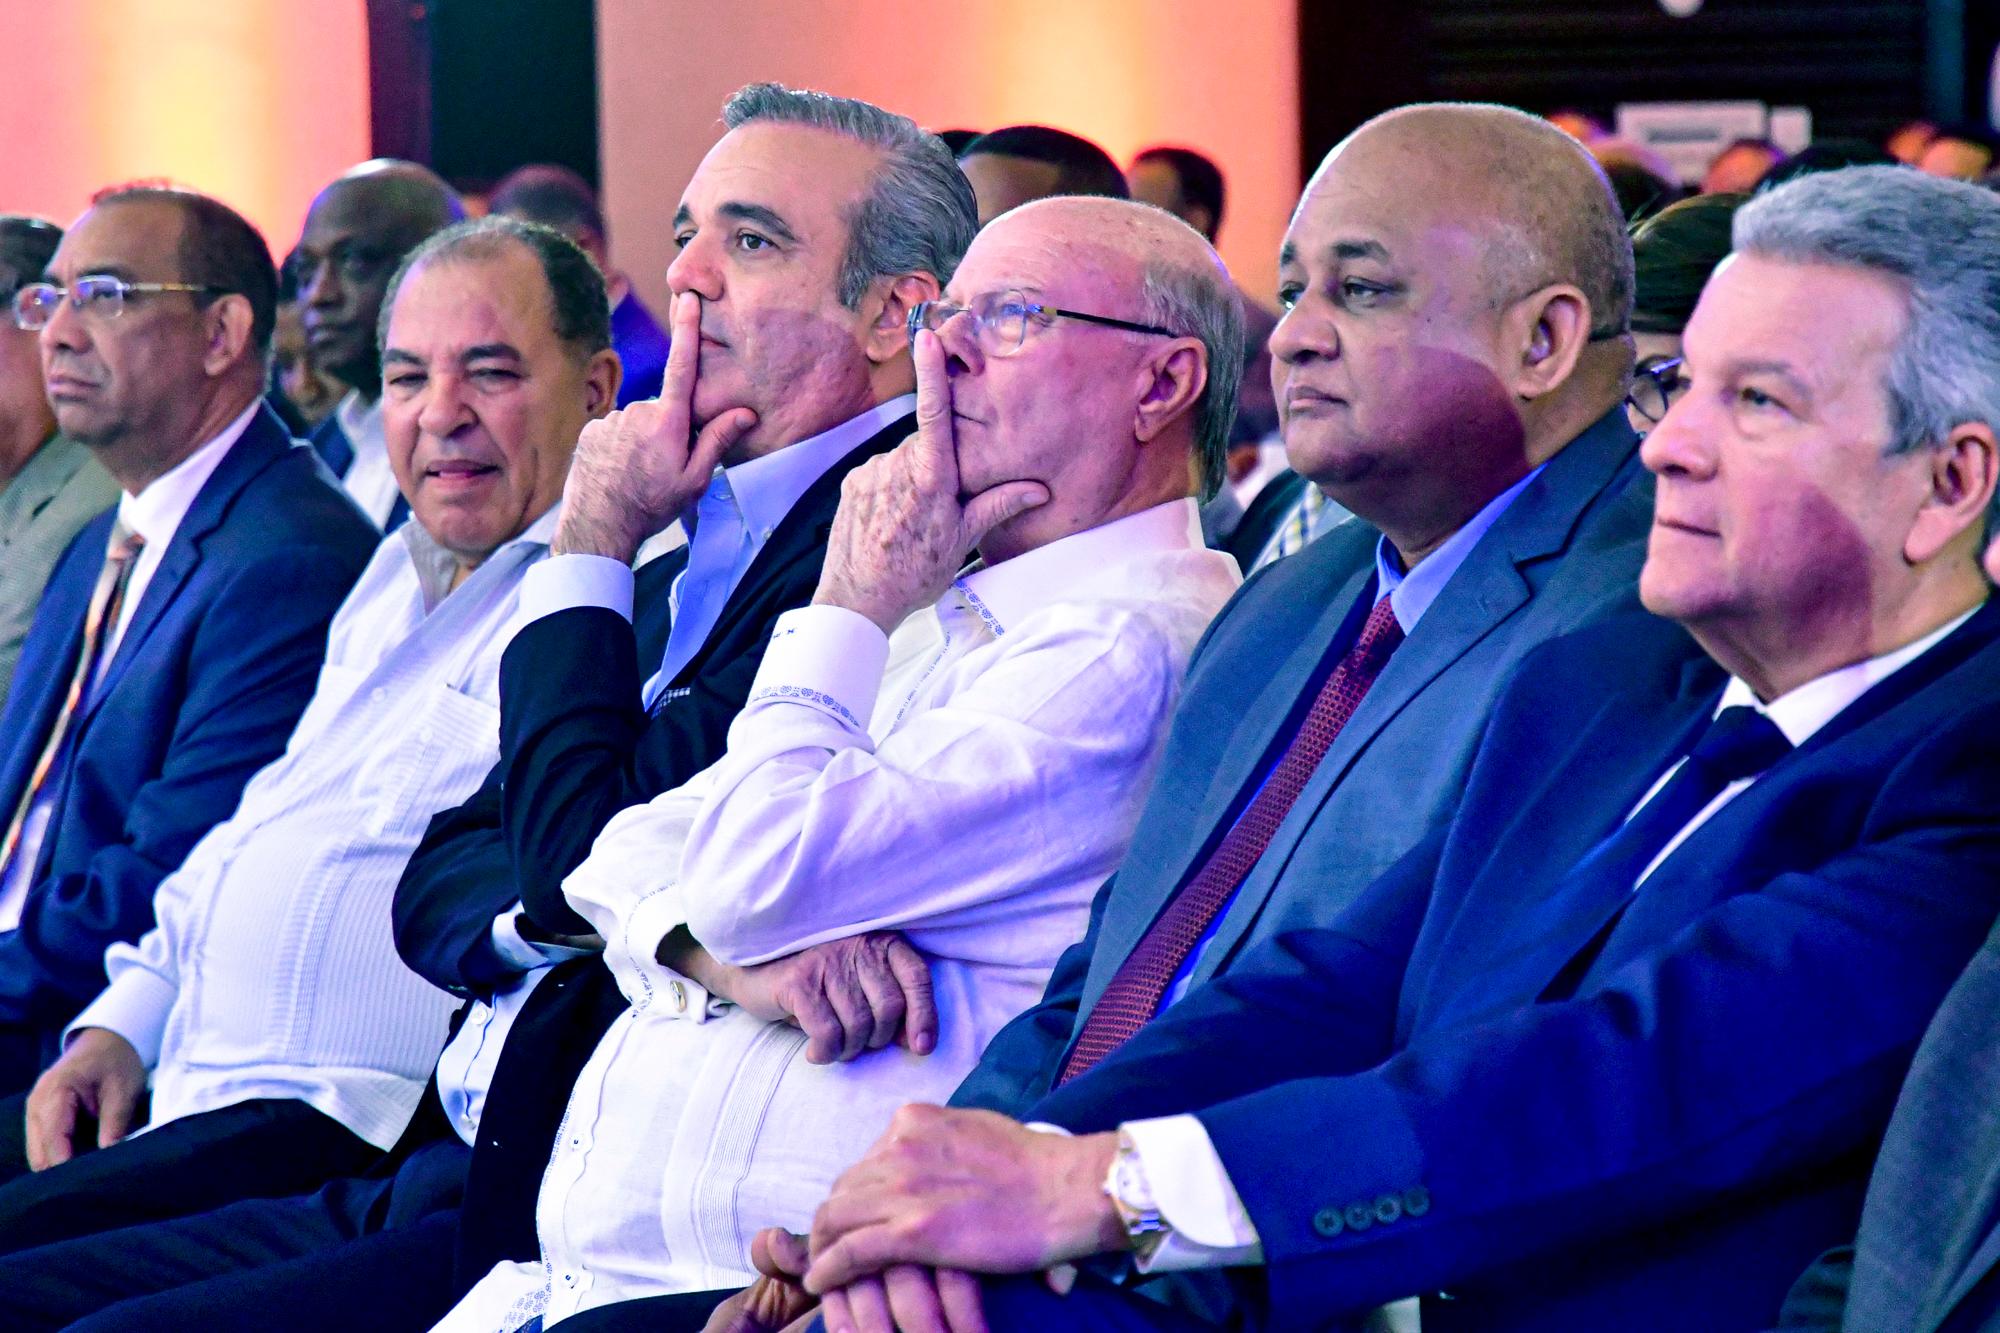 El expresidente Hipolito Mejia y el candidato a la presidencia por el PRM Luis Abinader, mantienen el mismo gesto durante el acto de la firma del código ética y conducta de los miembros y voluntarios del comando de campaña de Luis Abinader.